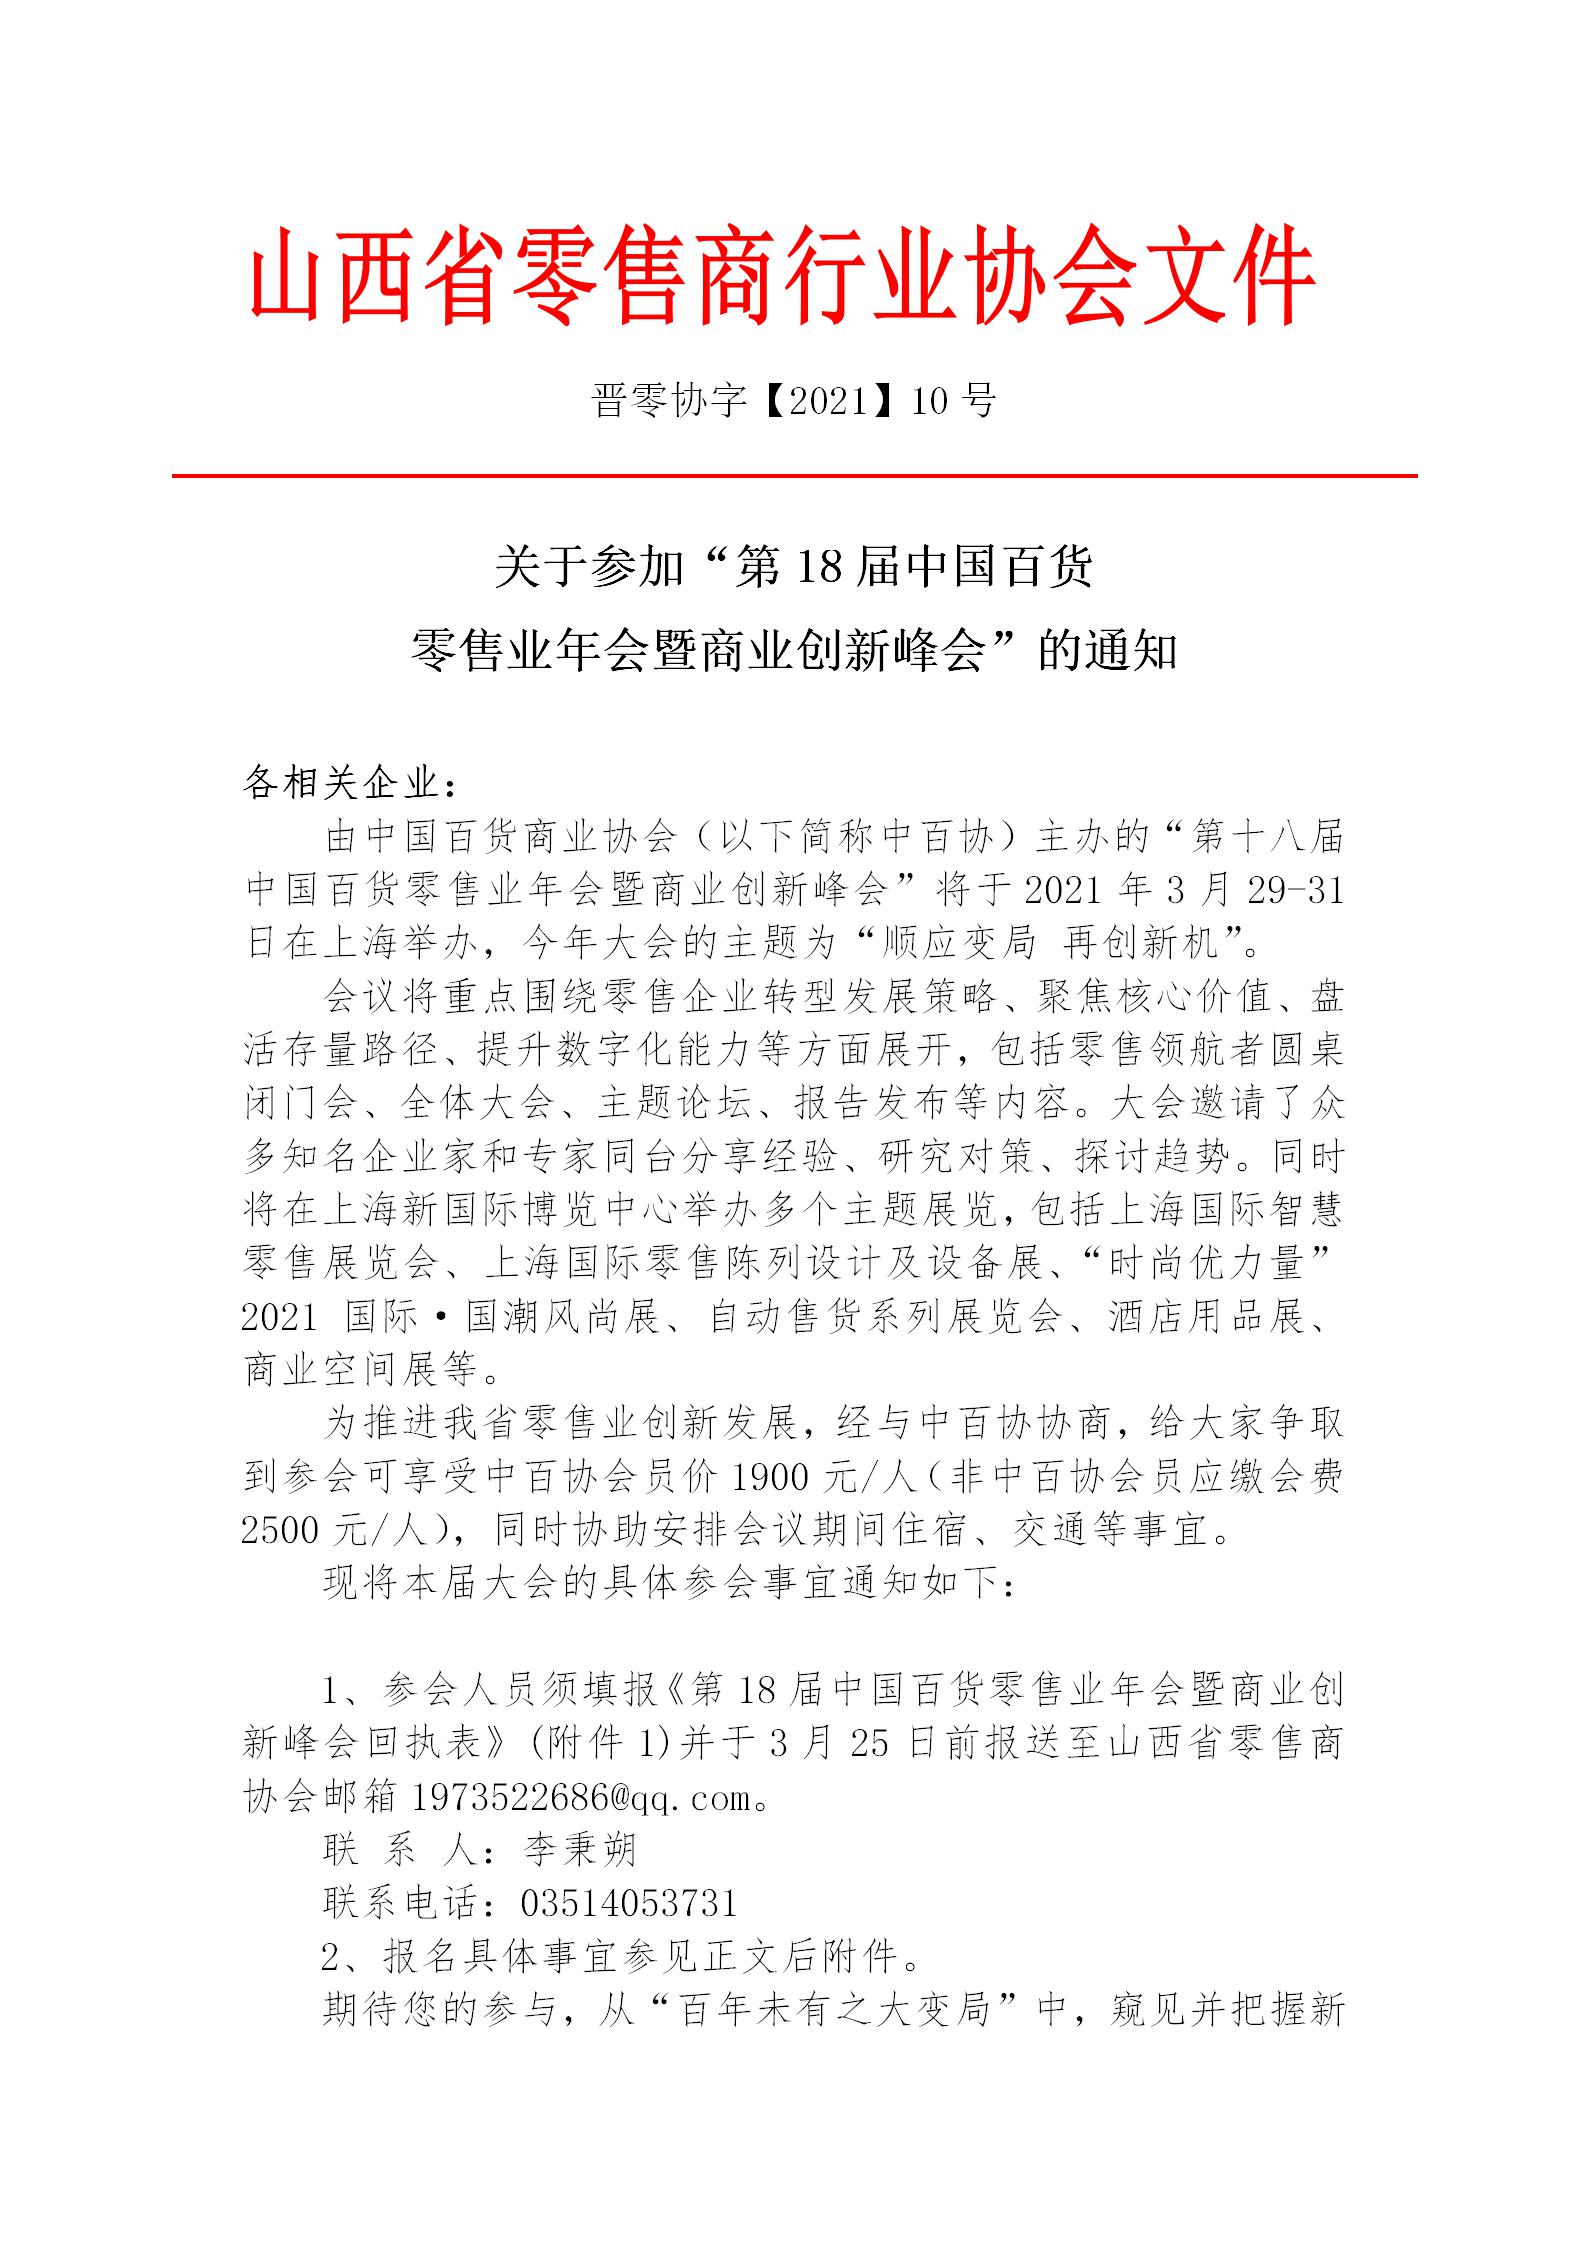 关于召开“第18届中国百货 零售业年会暨商业创新峰会”的通知(图1)